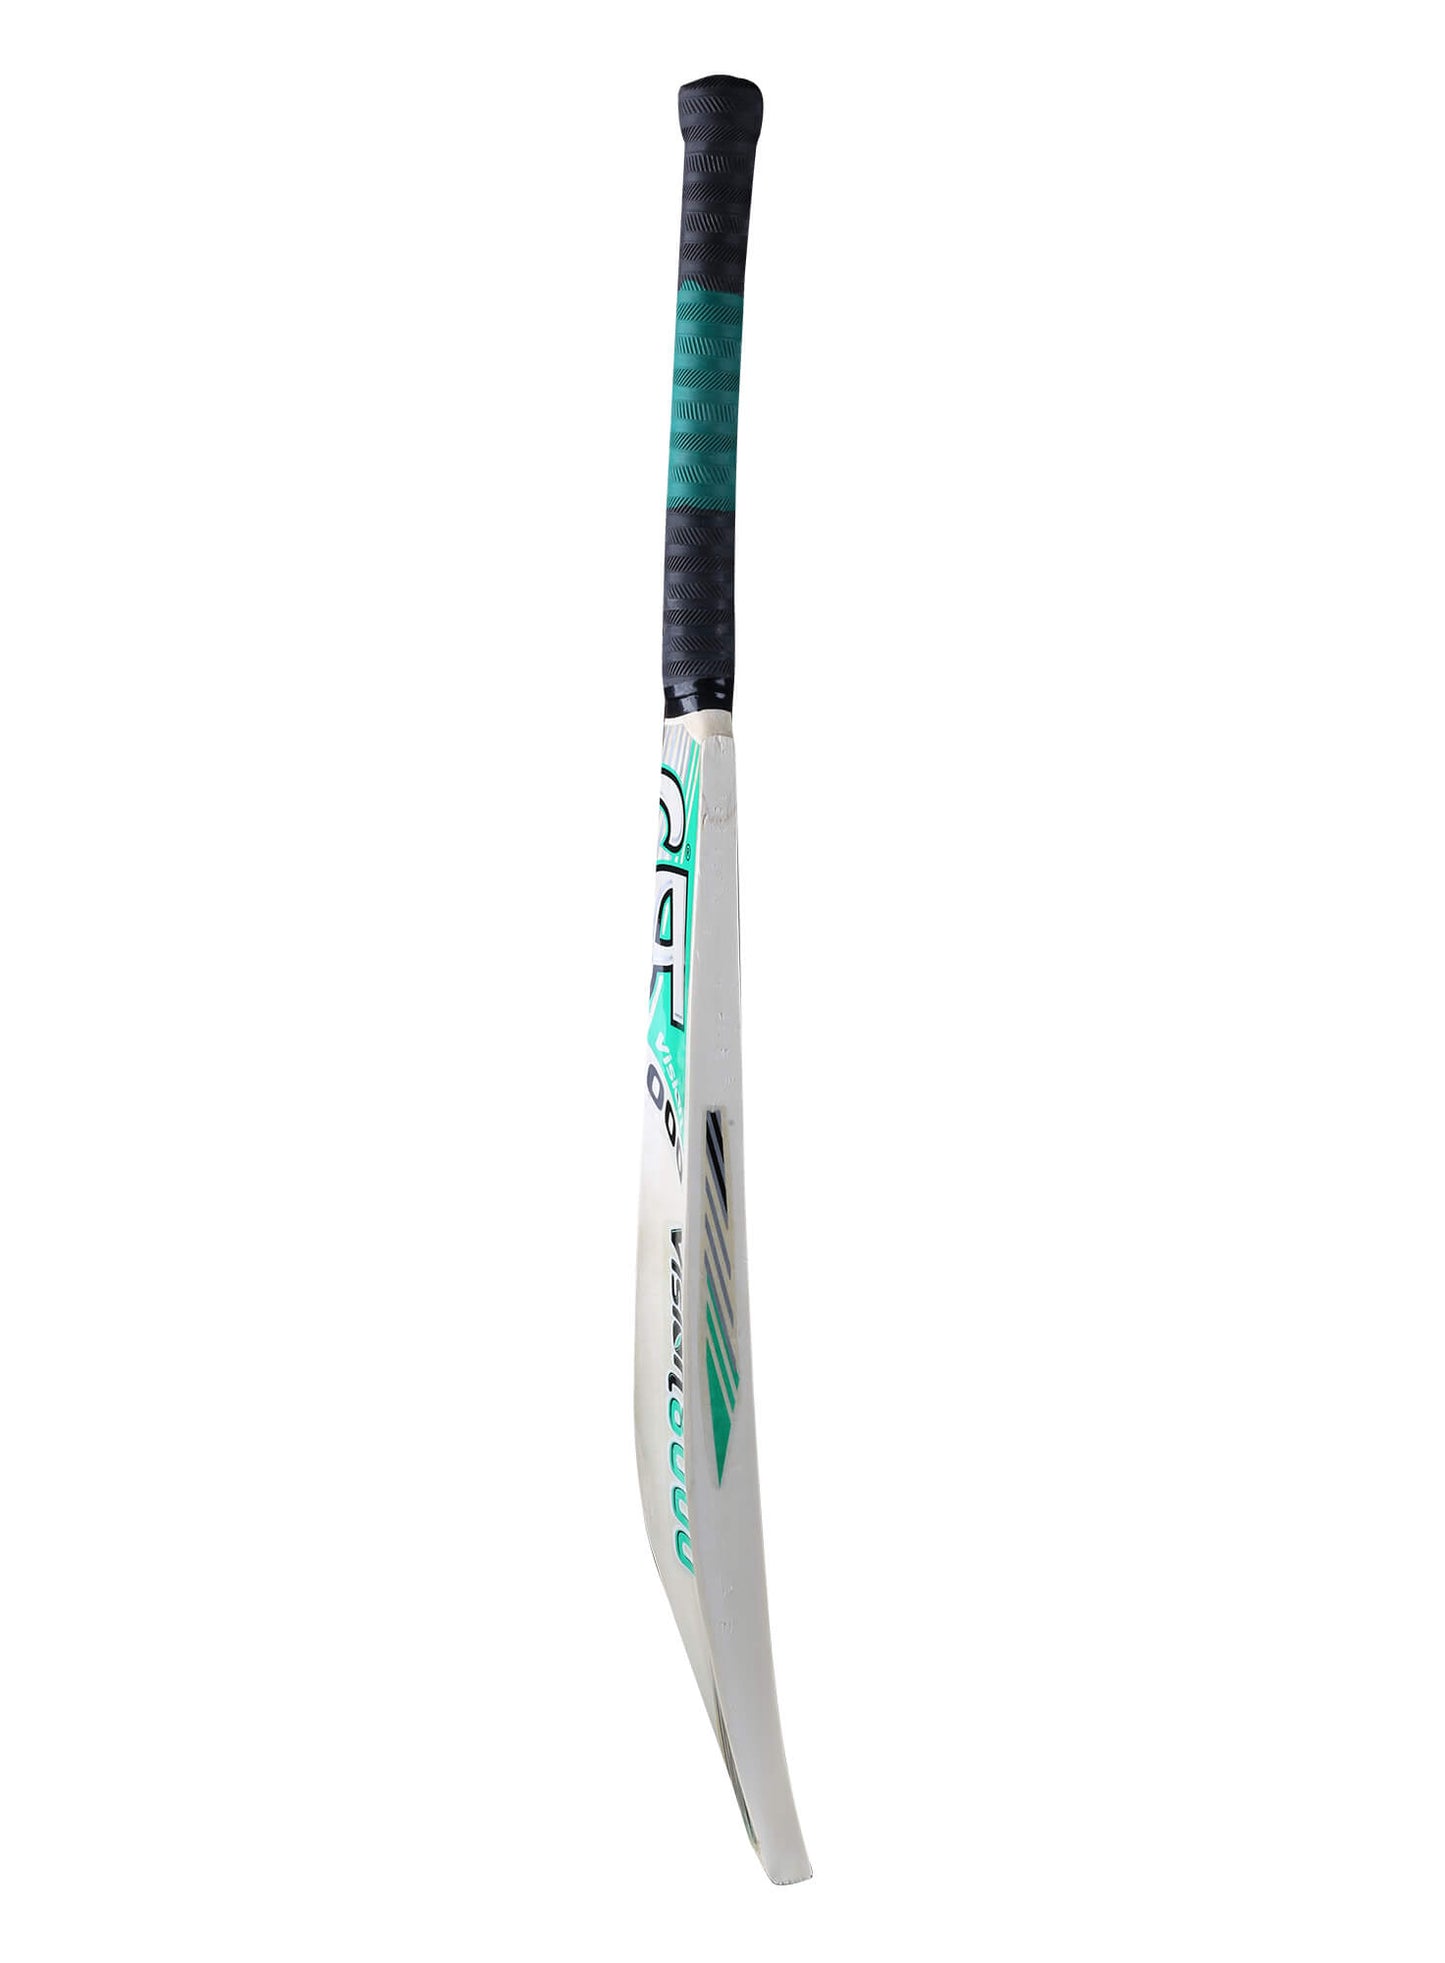 CA Vision 8000 tennis ball - tape ball cricket bat